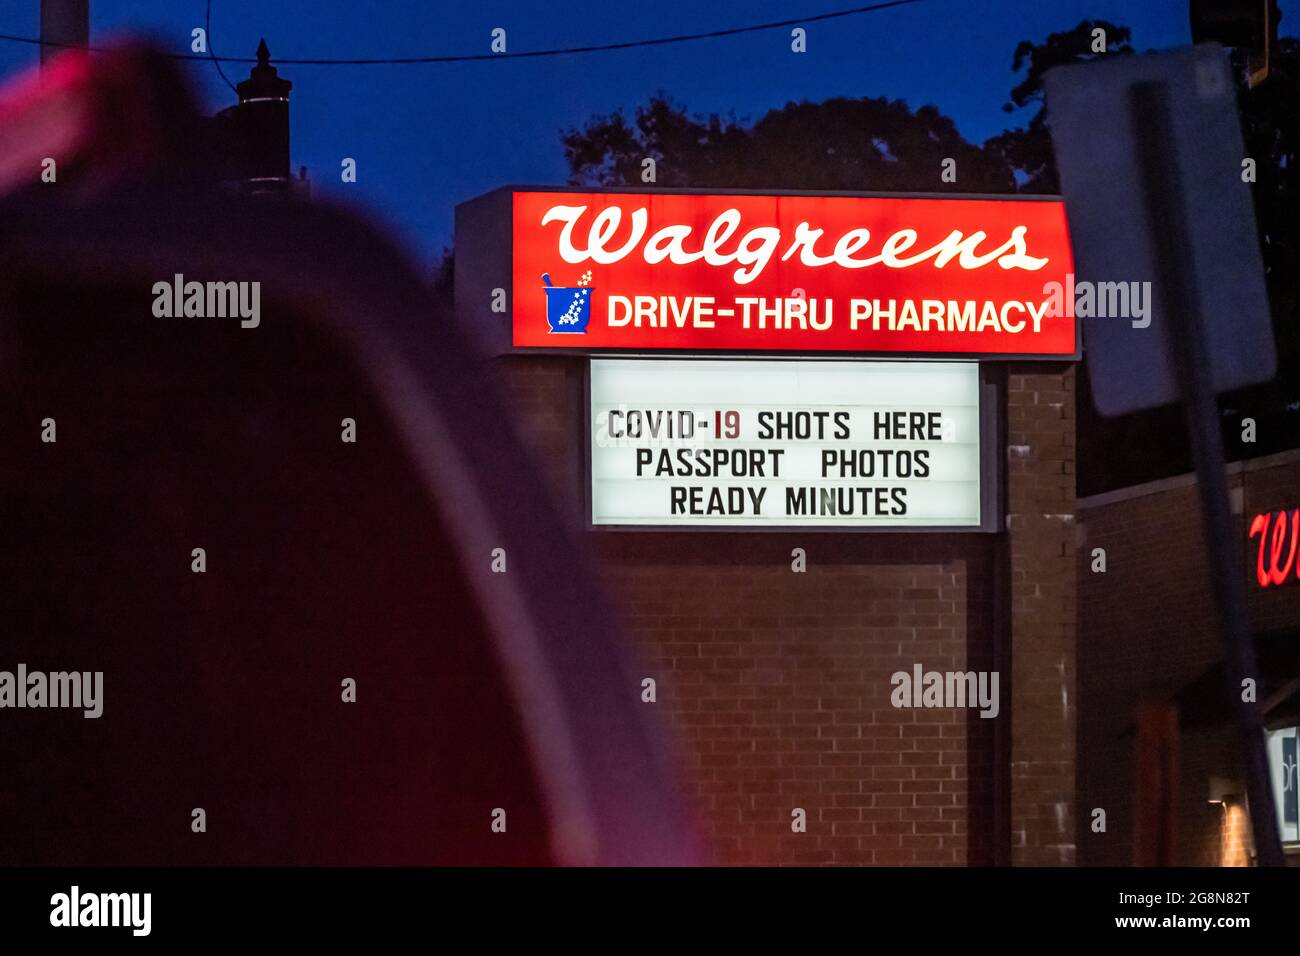 Panneau lumineux pour la pharmacie Walgreens offrant COVID-19 photos et photos de passeport instantanées à Snellville, Géorgie. (ÉTATS-UNIS) Banque D'Images